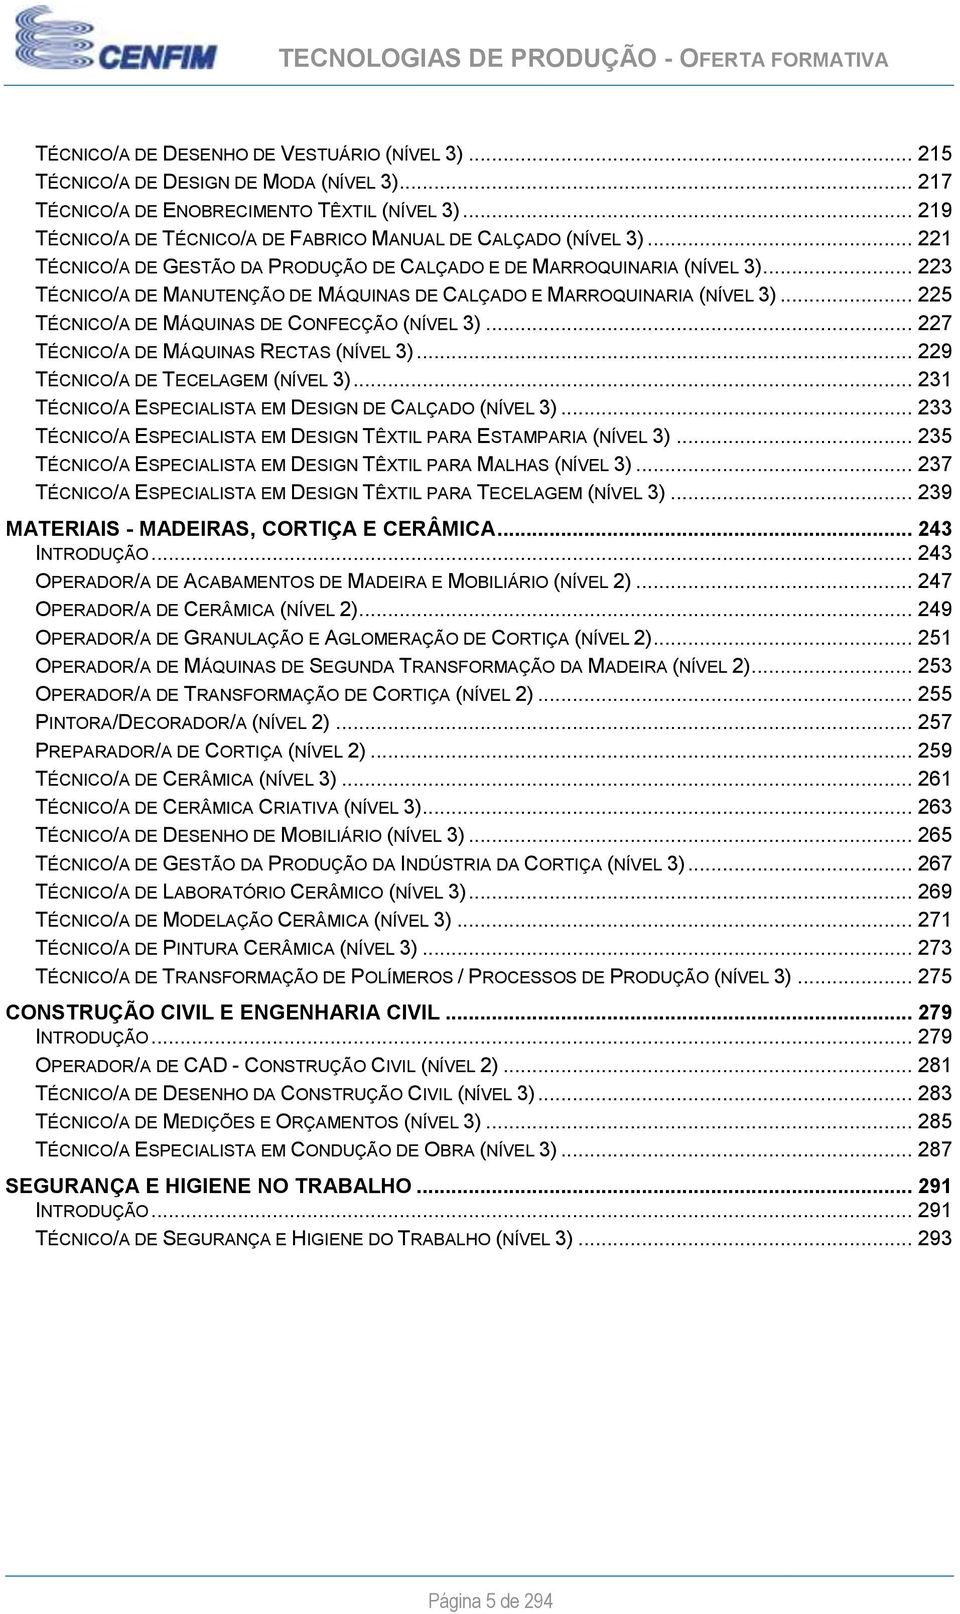 .. 223 TÉCNICO/A DE MANUTENÇÃO DE MÁQUINAS DE CALÇADO E MARROQUINARIA (NÍVEL 3)... 225 TÉCNICO/A DE MÁQUINAS DE CONFECÇÃO (NÍVEL 3)... 227 TÉCNICO/A DE MÁQUINAS RECTAS (NÍVEL 3).